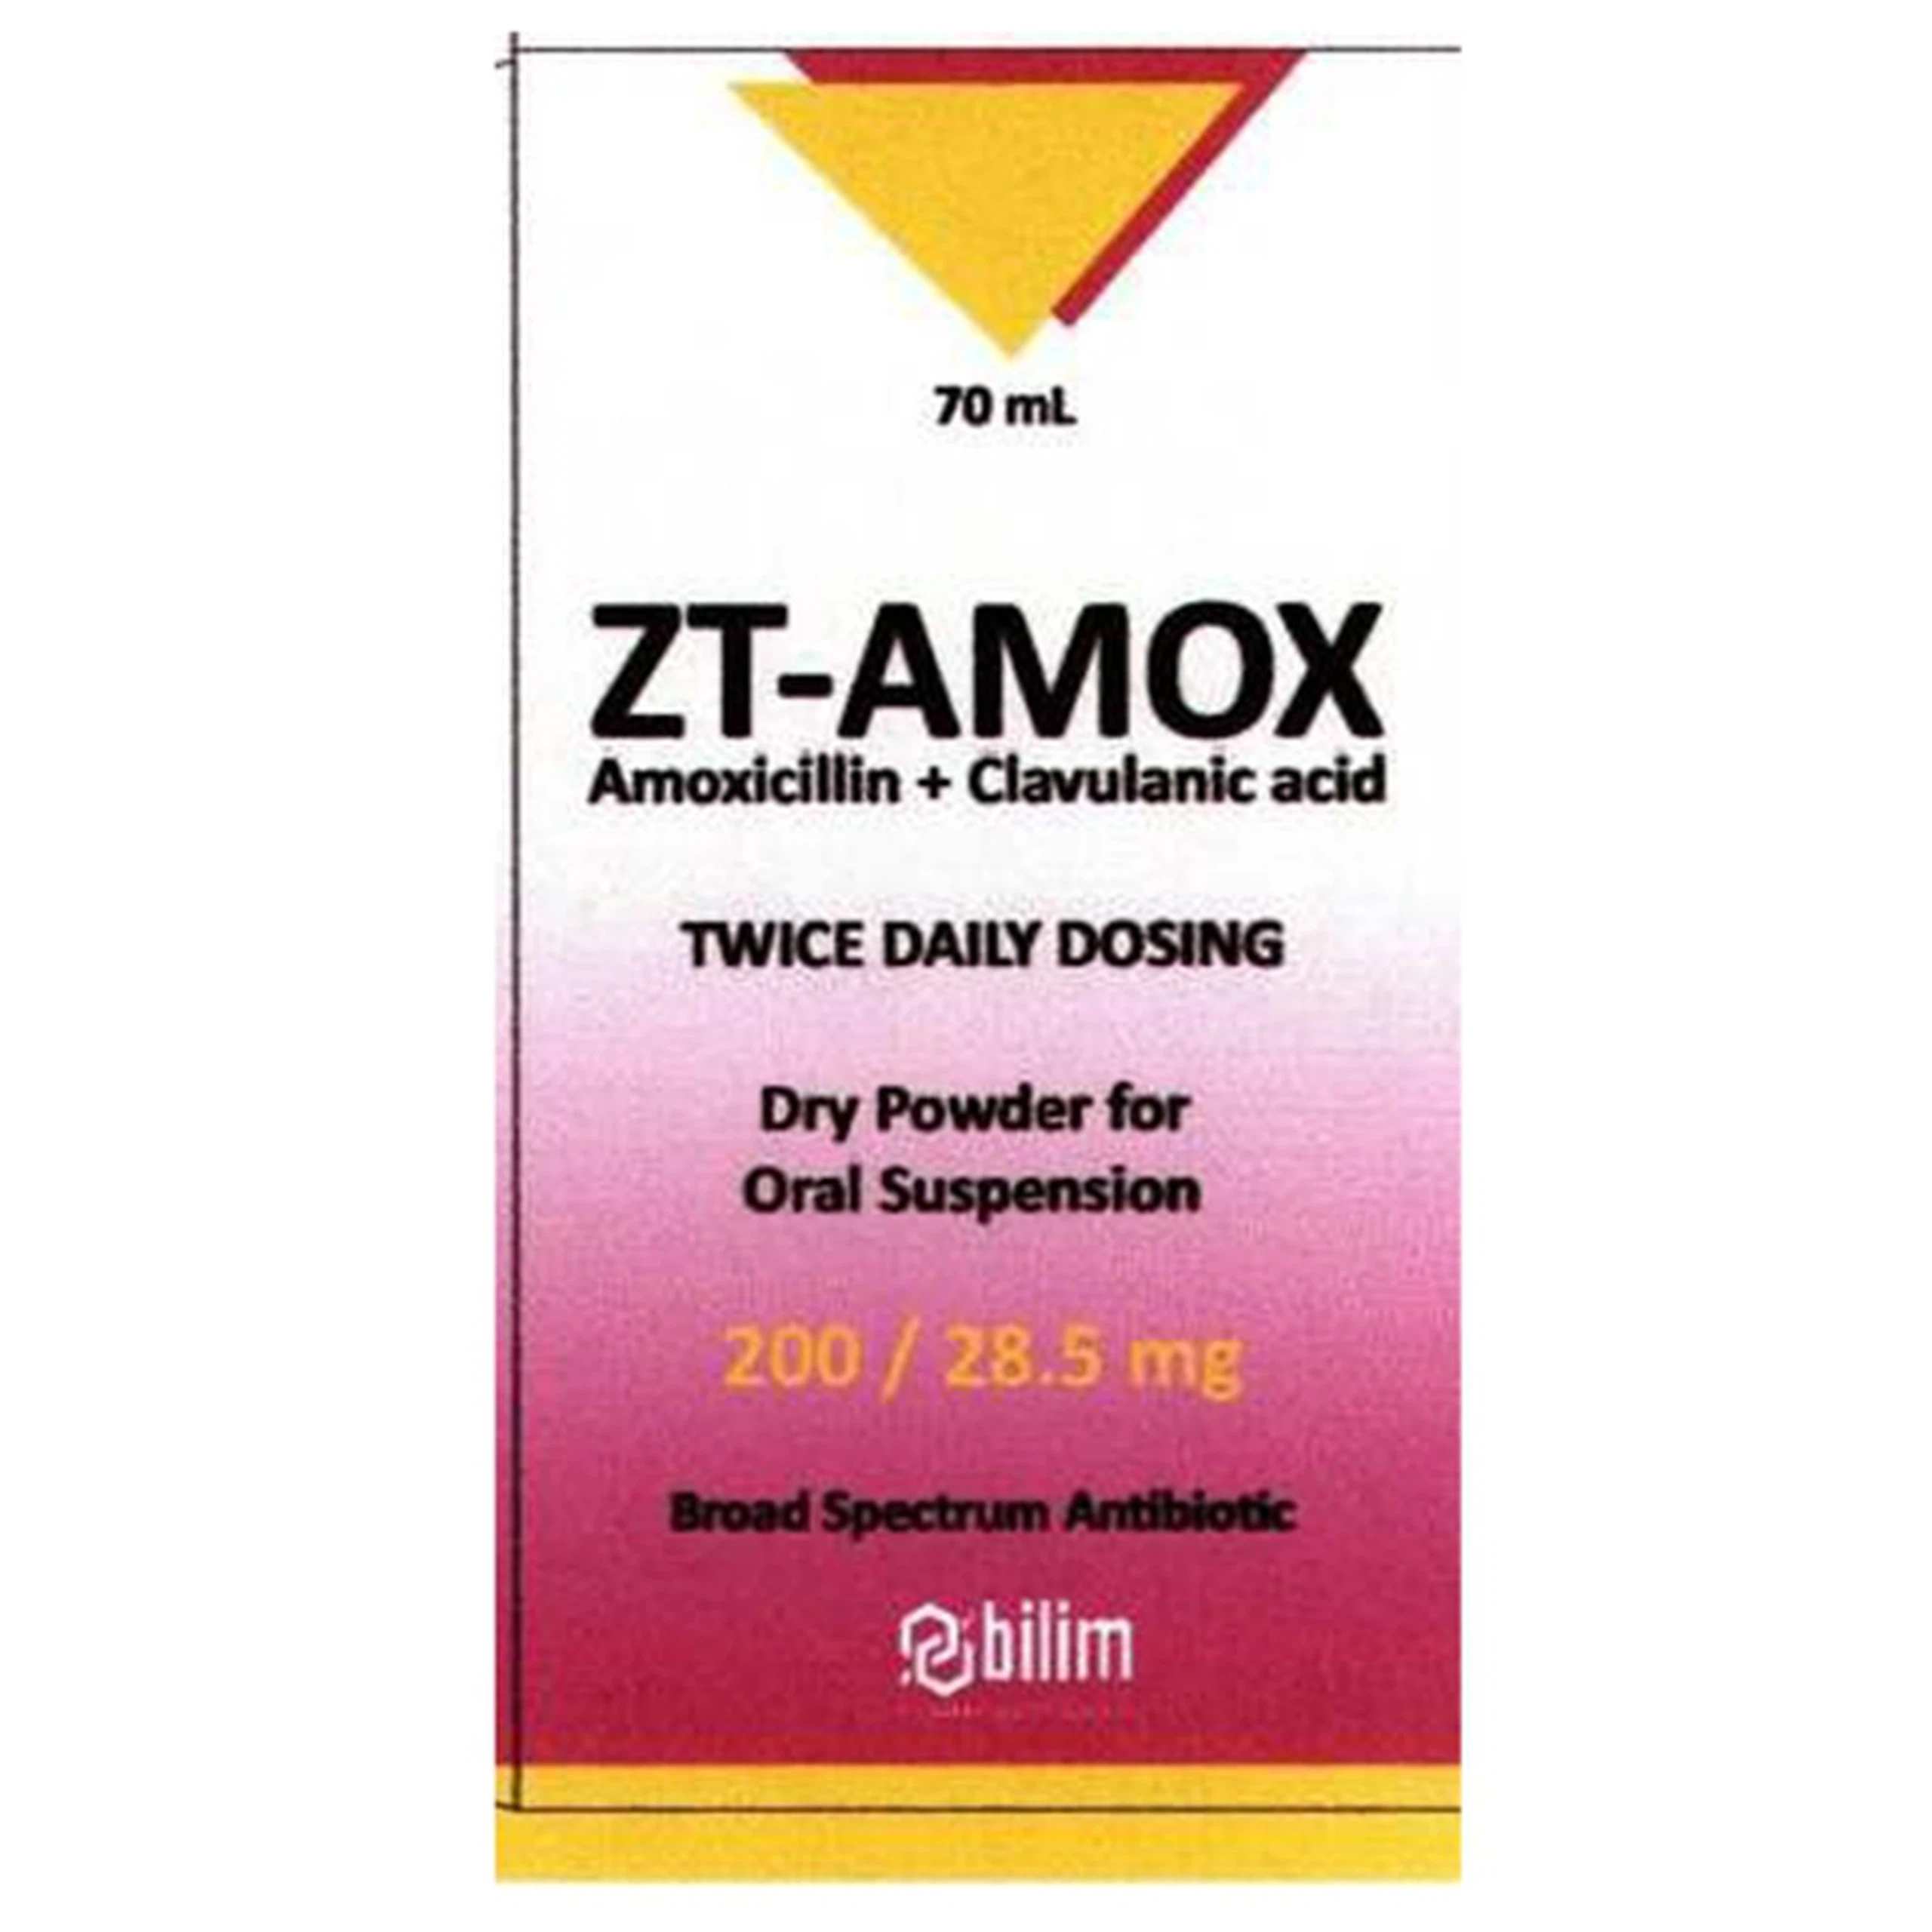 Bột pha hỗn dịch uống ZT-Amox 200/28.5mg Bilim điều trị các chứng nhiễm khuẩn (70ml)